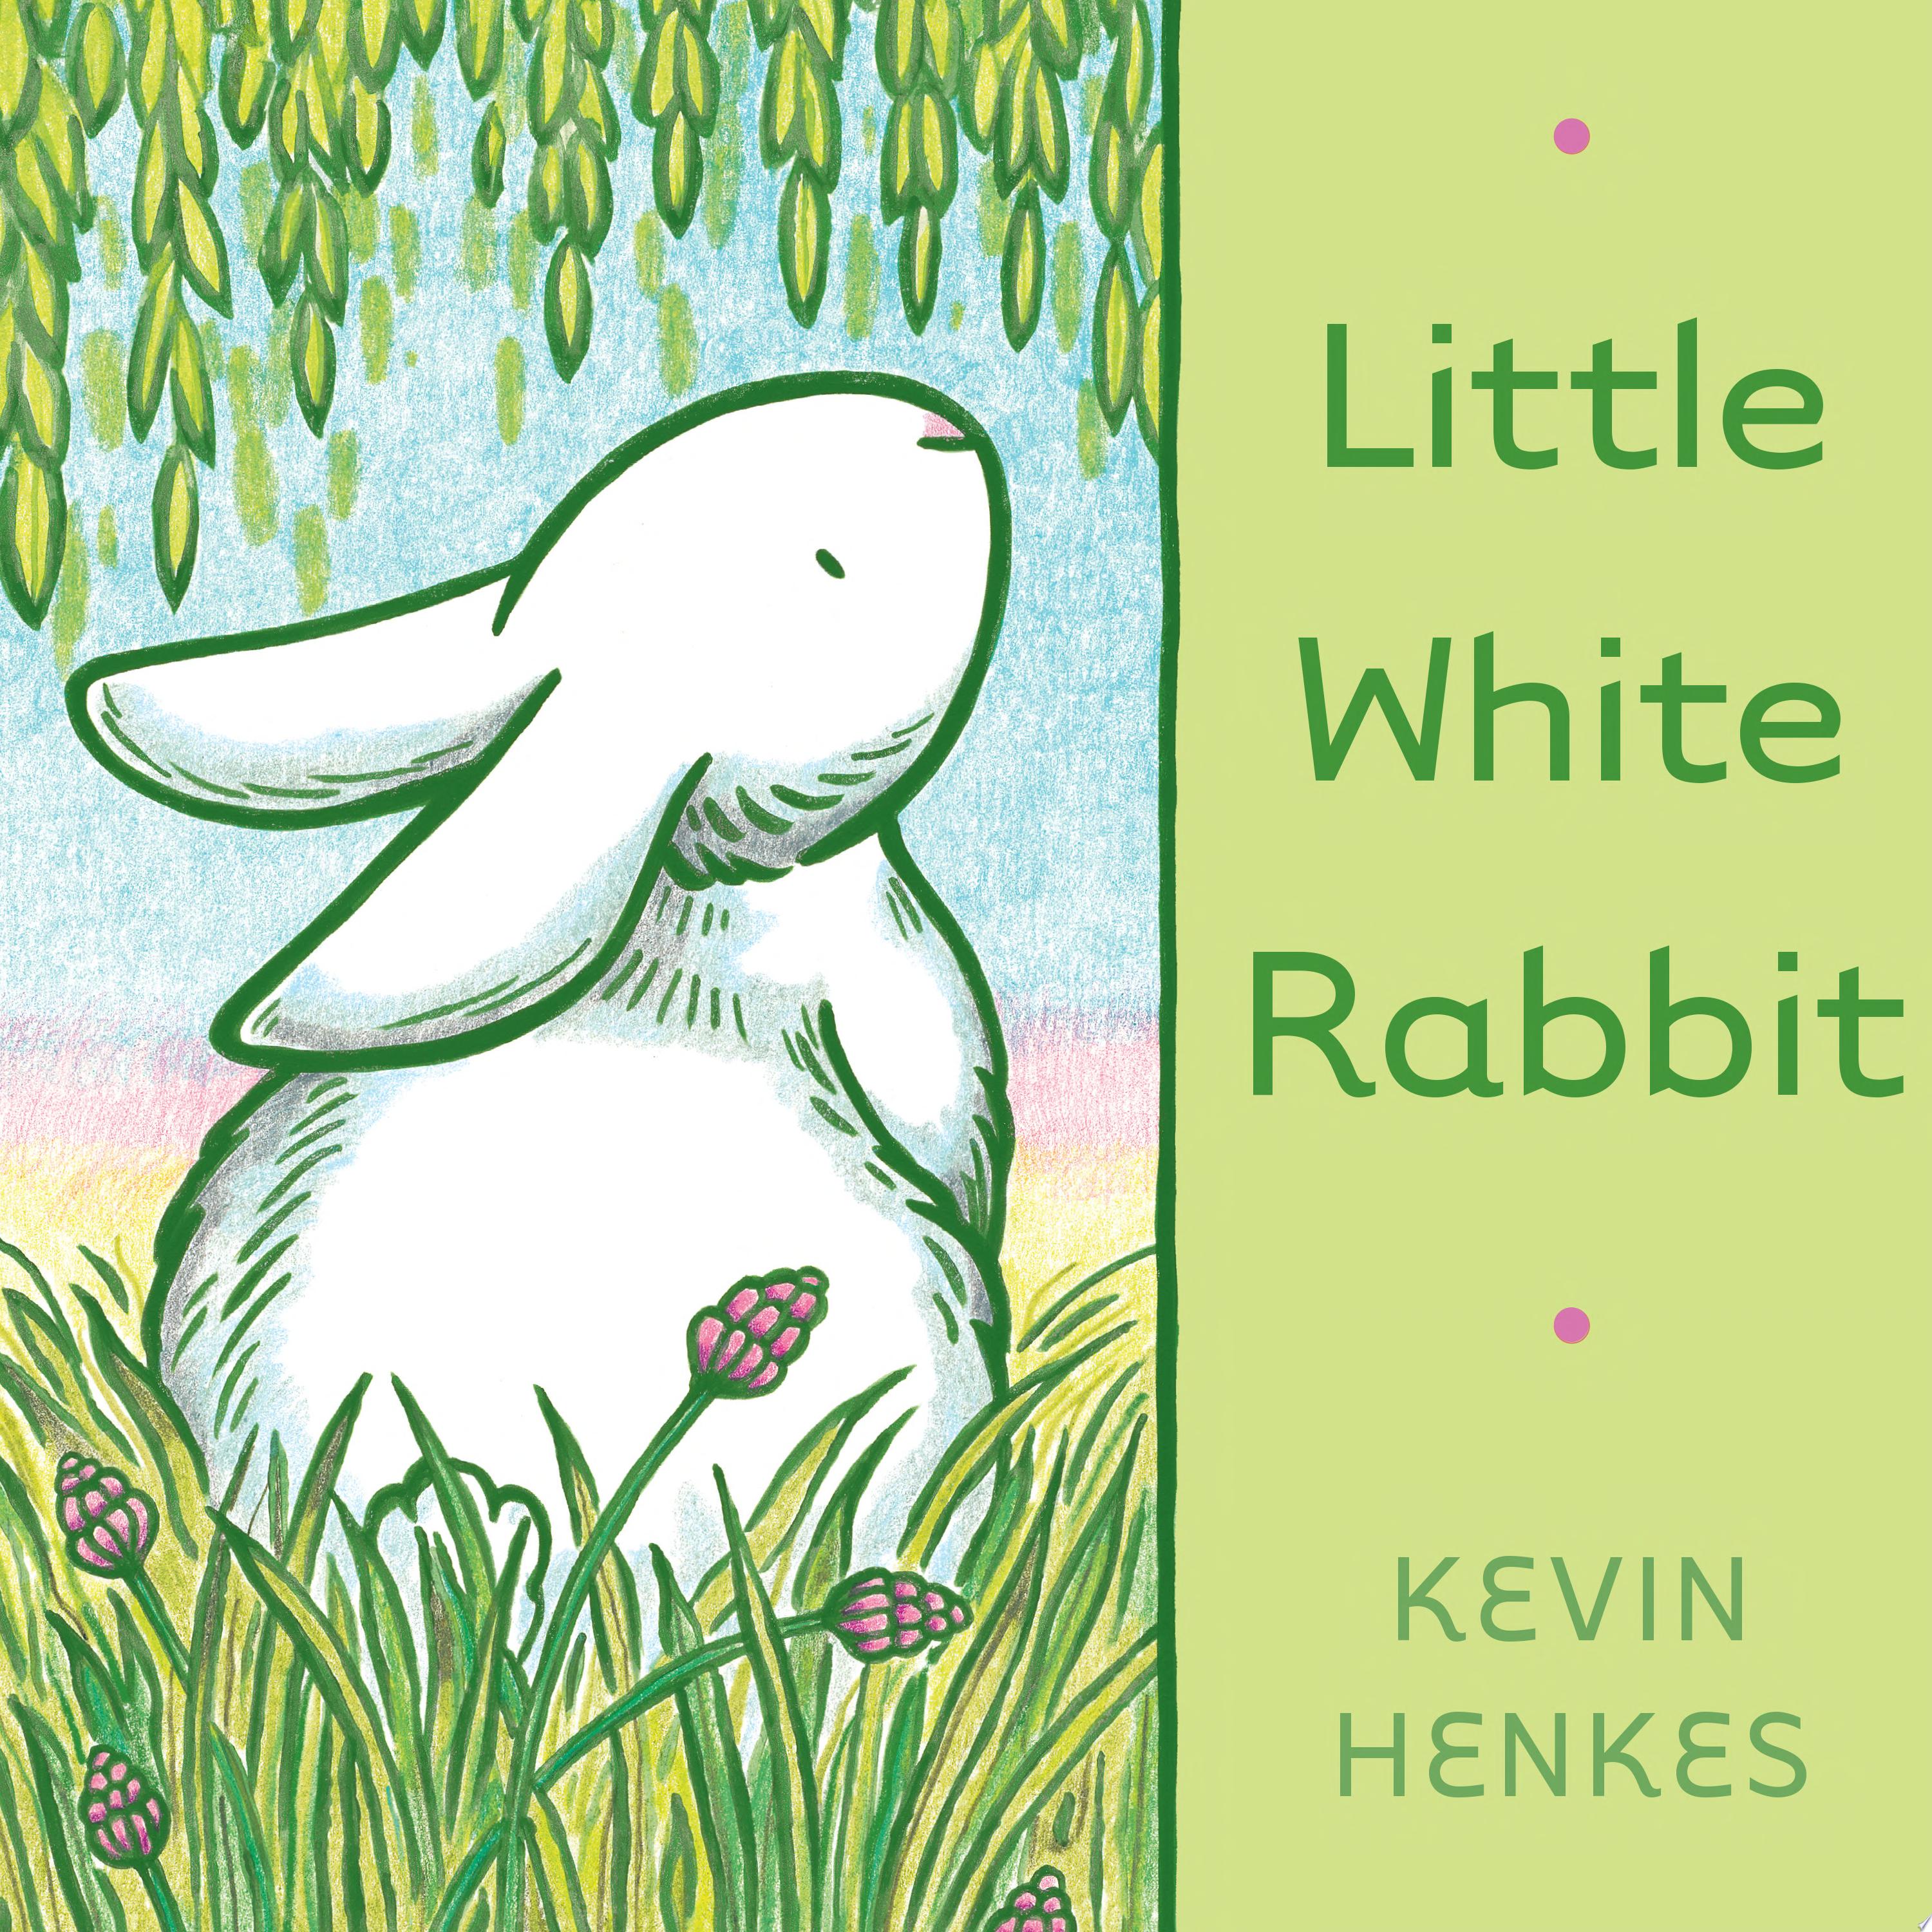 Image for "Little White Rabbit"